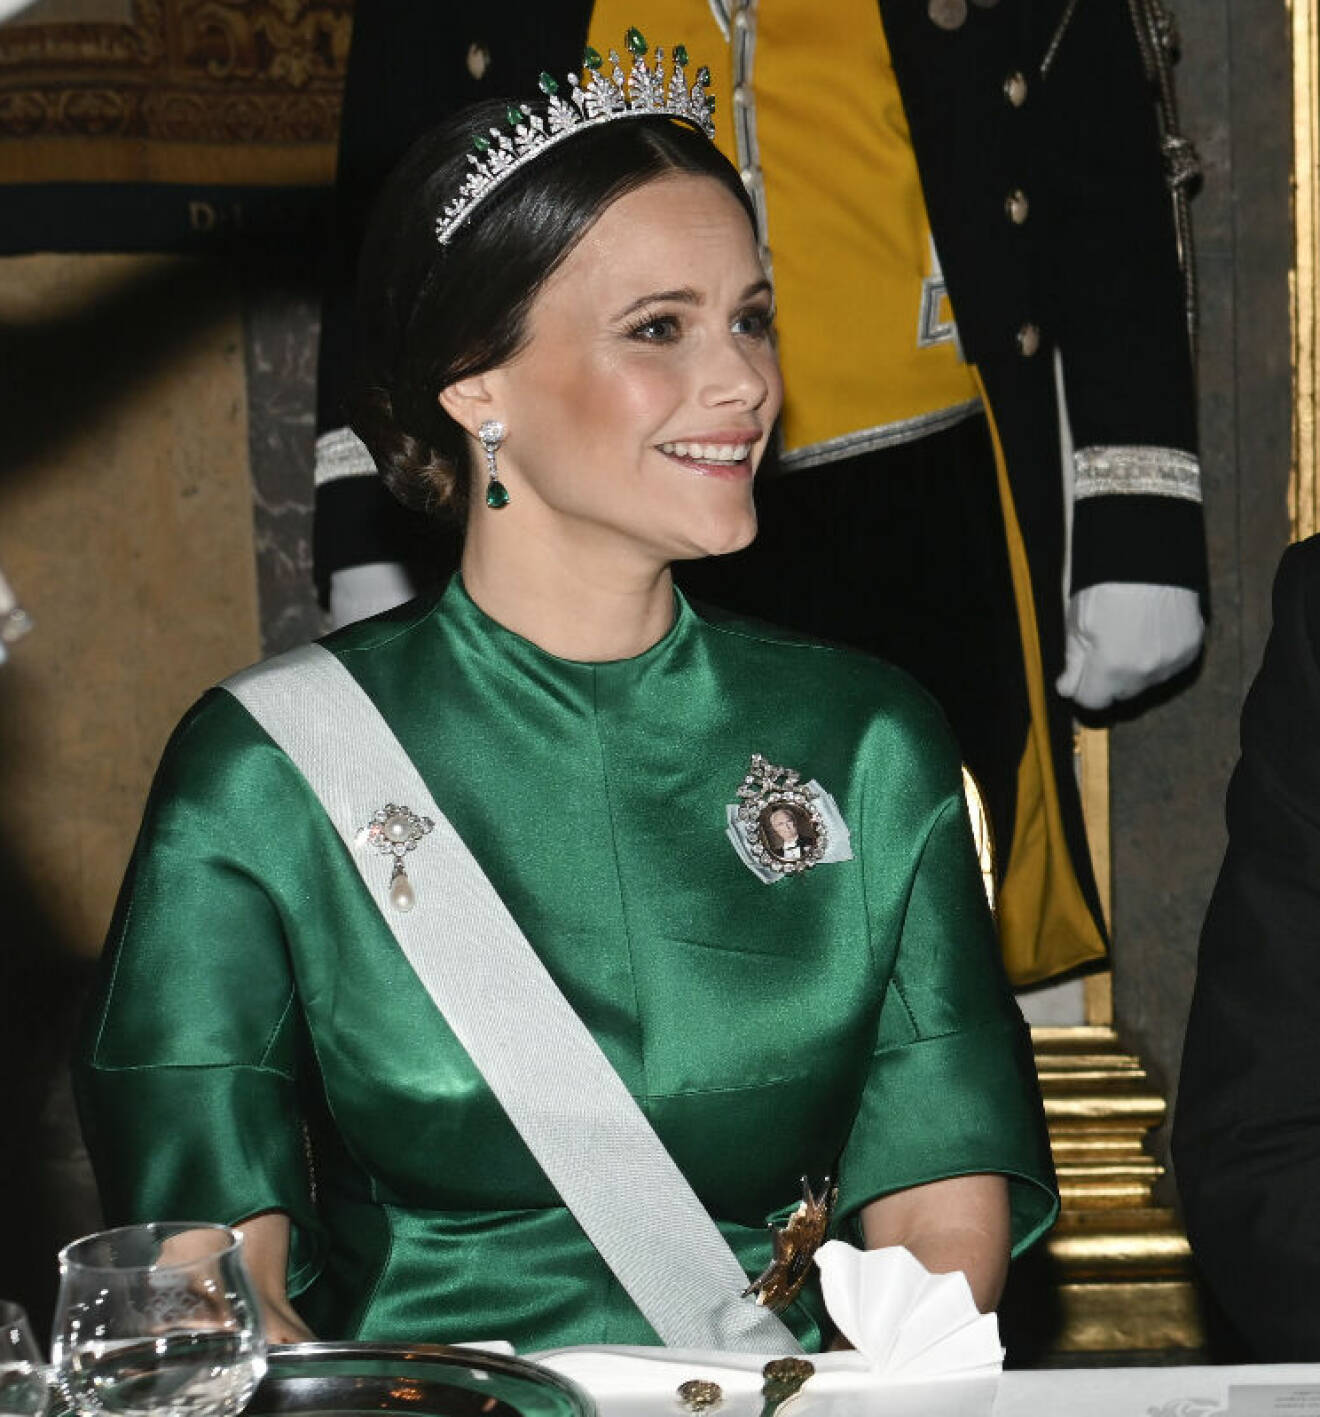 Prinsessan Sofia i grönt och tiara med smaragder